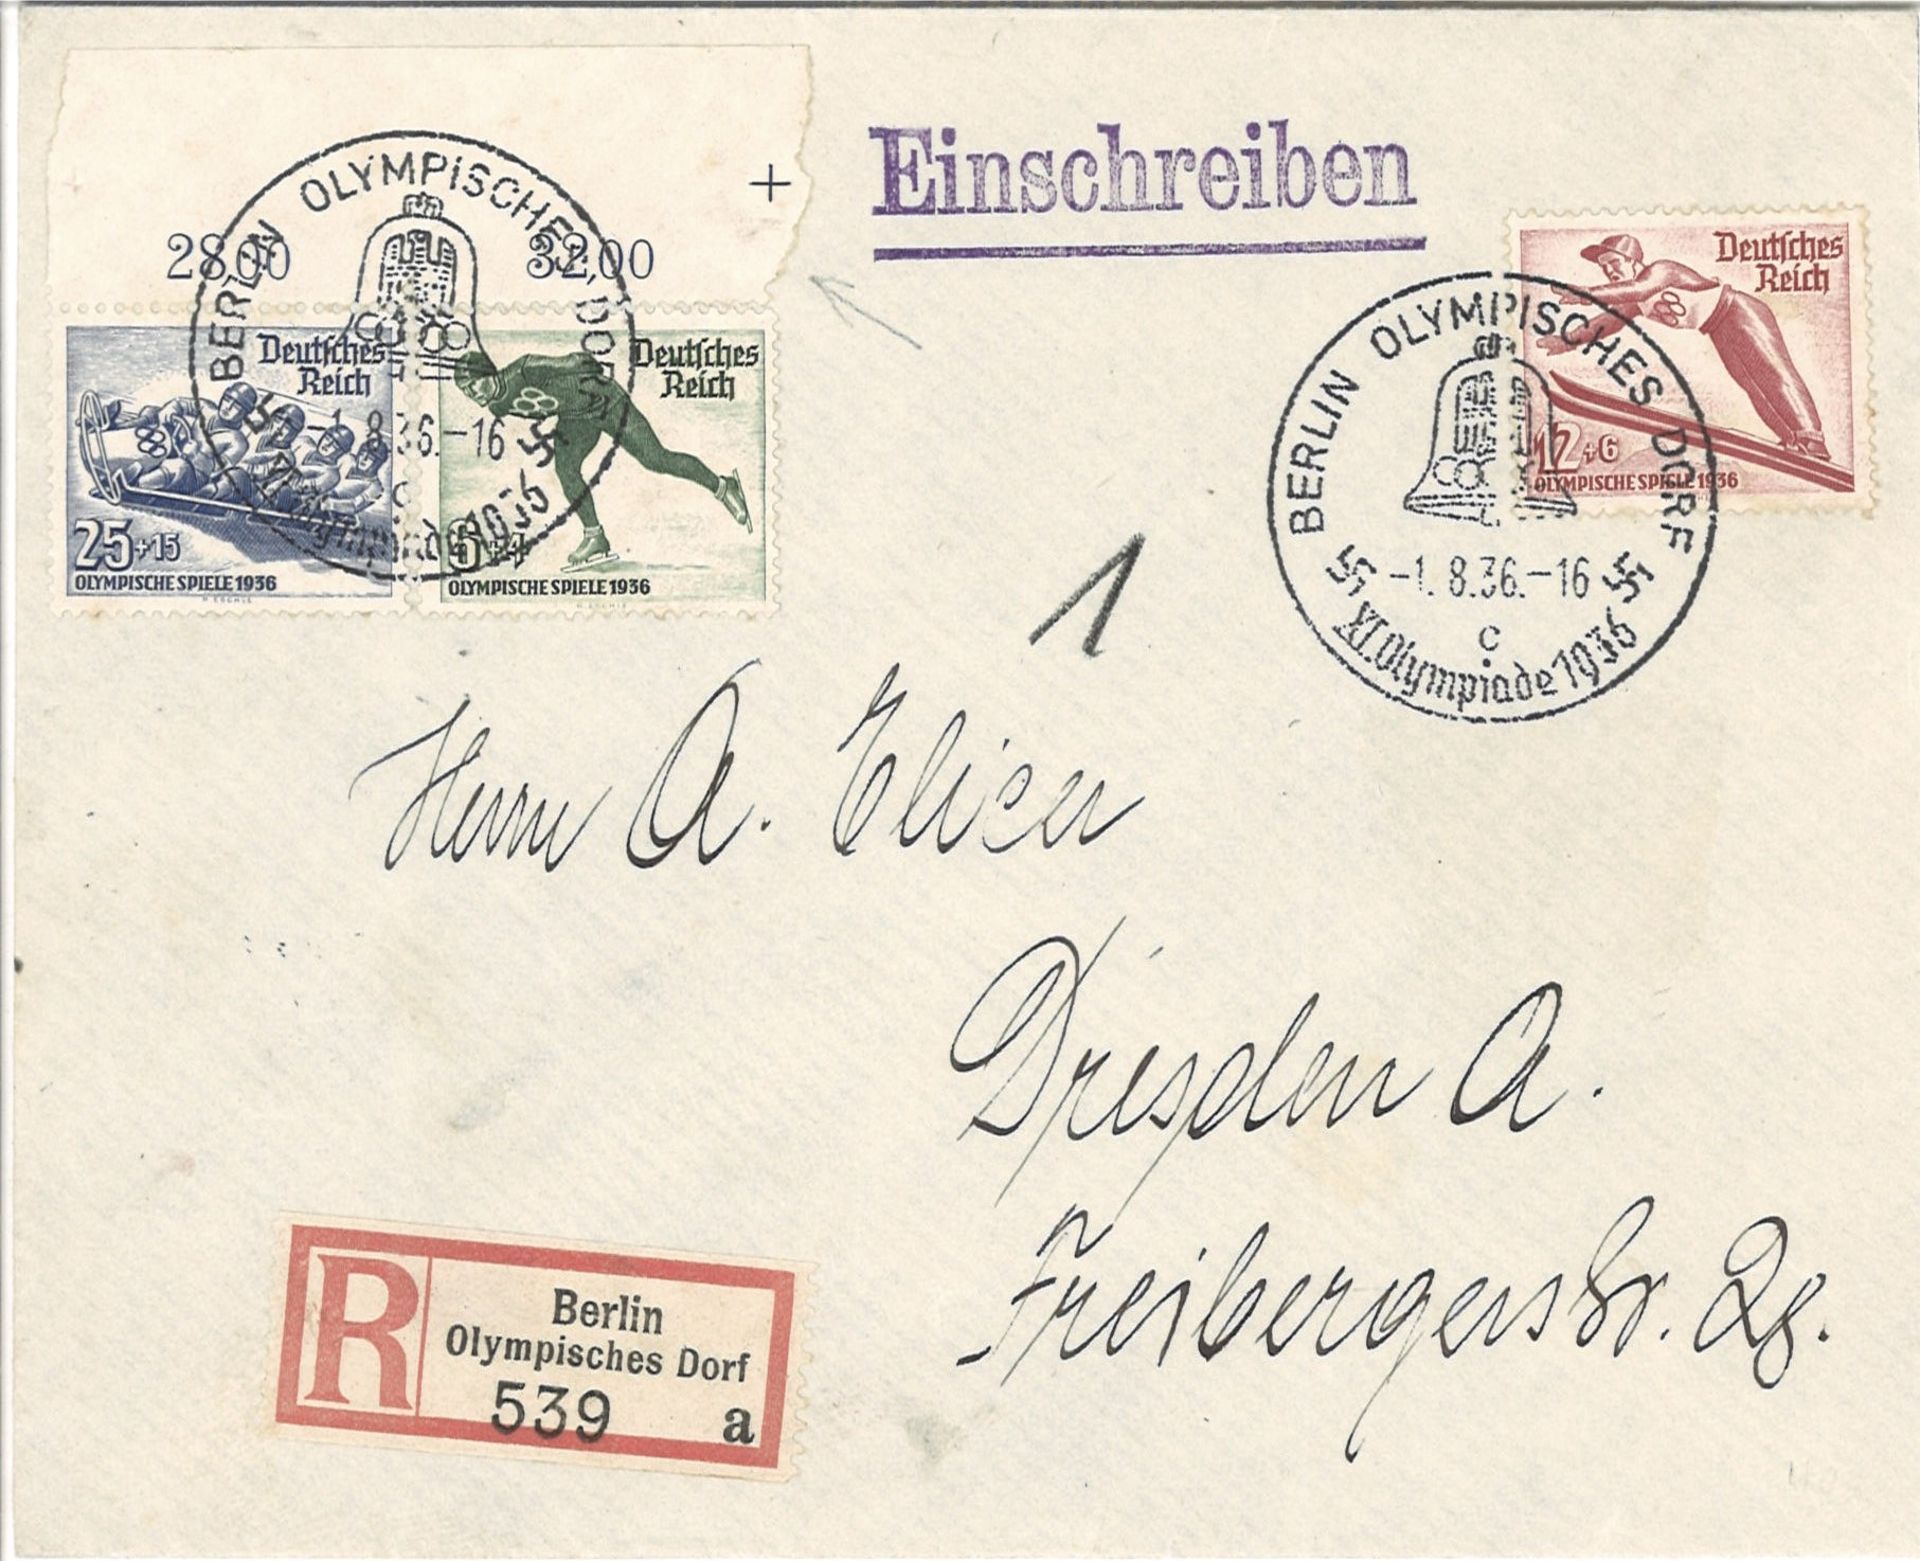 Deutsches Reich, Sonder - R - Brief Berlin (Groß) - Olympisches Dorf mit Sonderstemel "c", mit